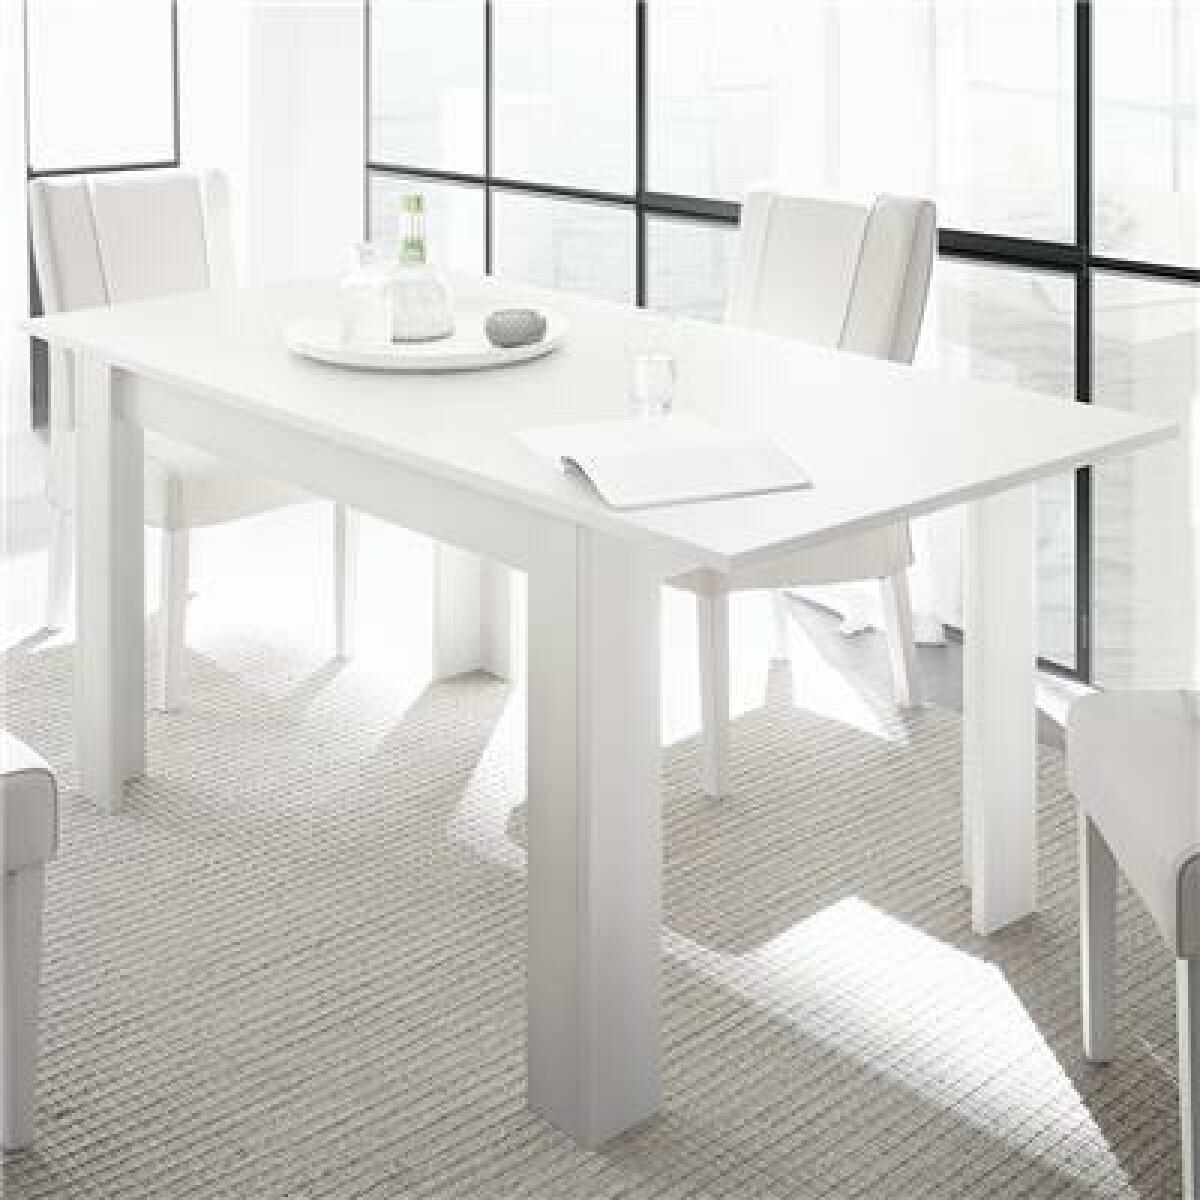 Tables à manger Kasalinea Table extensible 140 cm design blanc laqué AGATHE-L 185 x P 90 x H 79 cm- Blanc